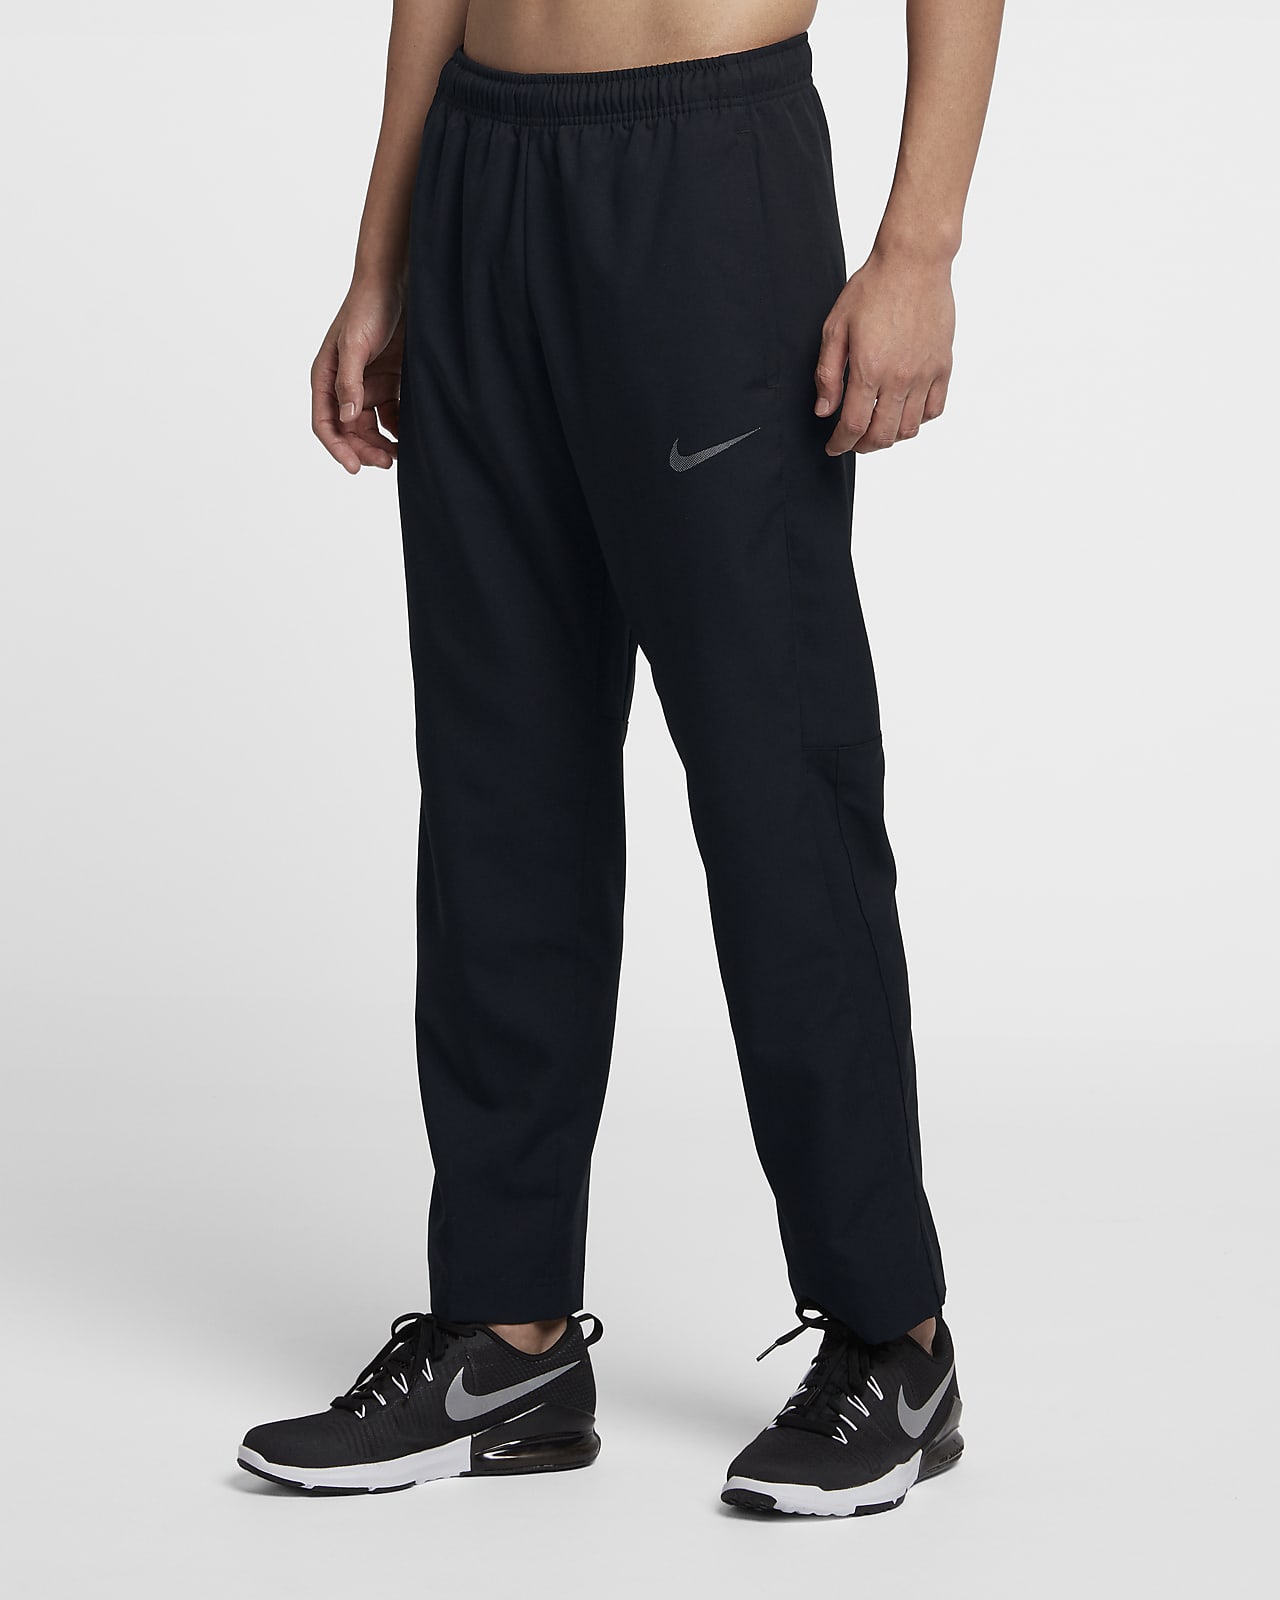 Nike Dri-FIT Men's Training Trousers. Nike EG